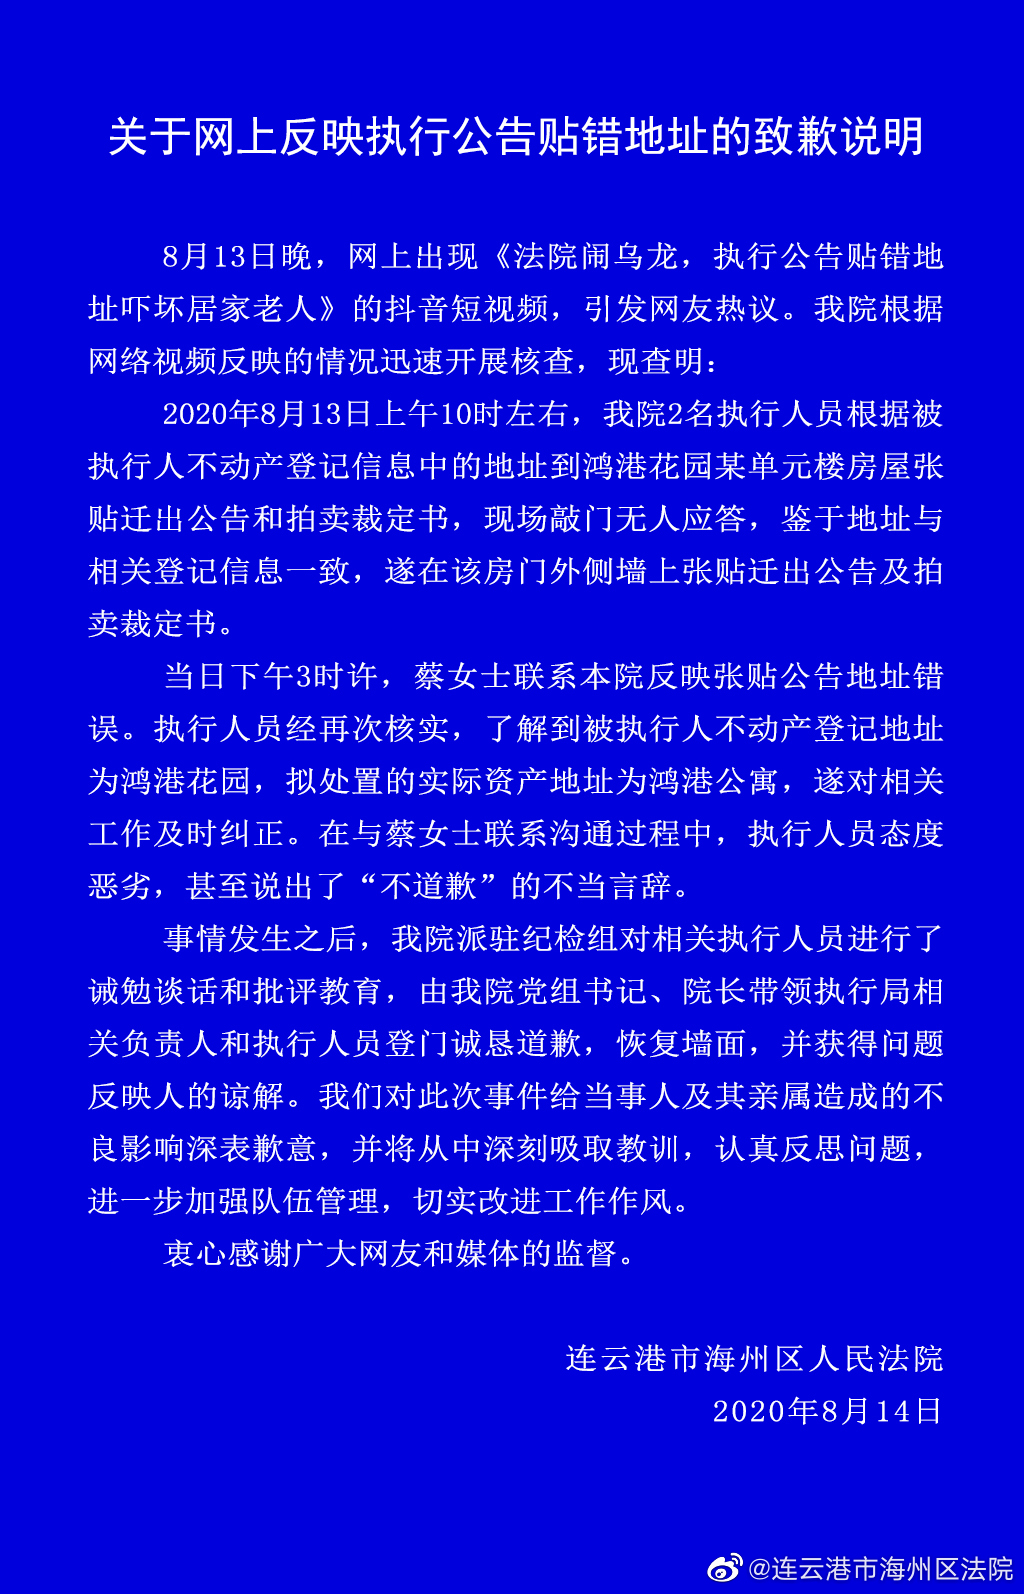 连云港法院就贴错执行公告道歉怎么回事？此前态度豪横曾说拒不道歉